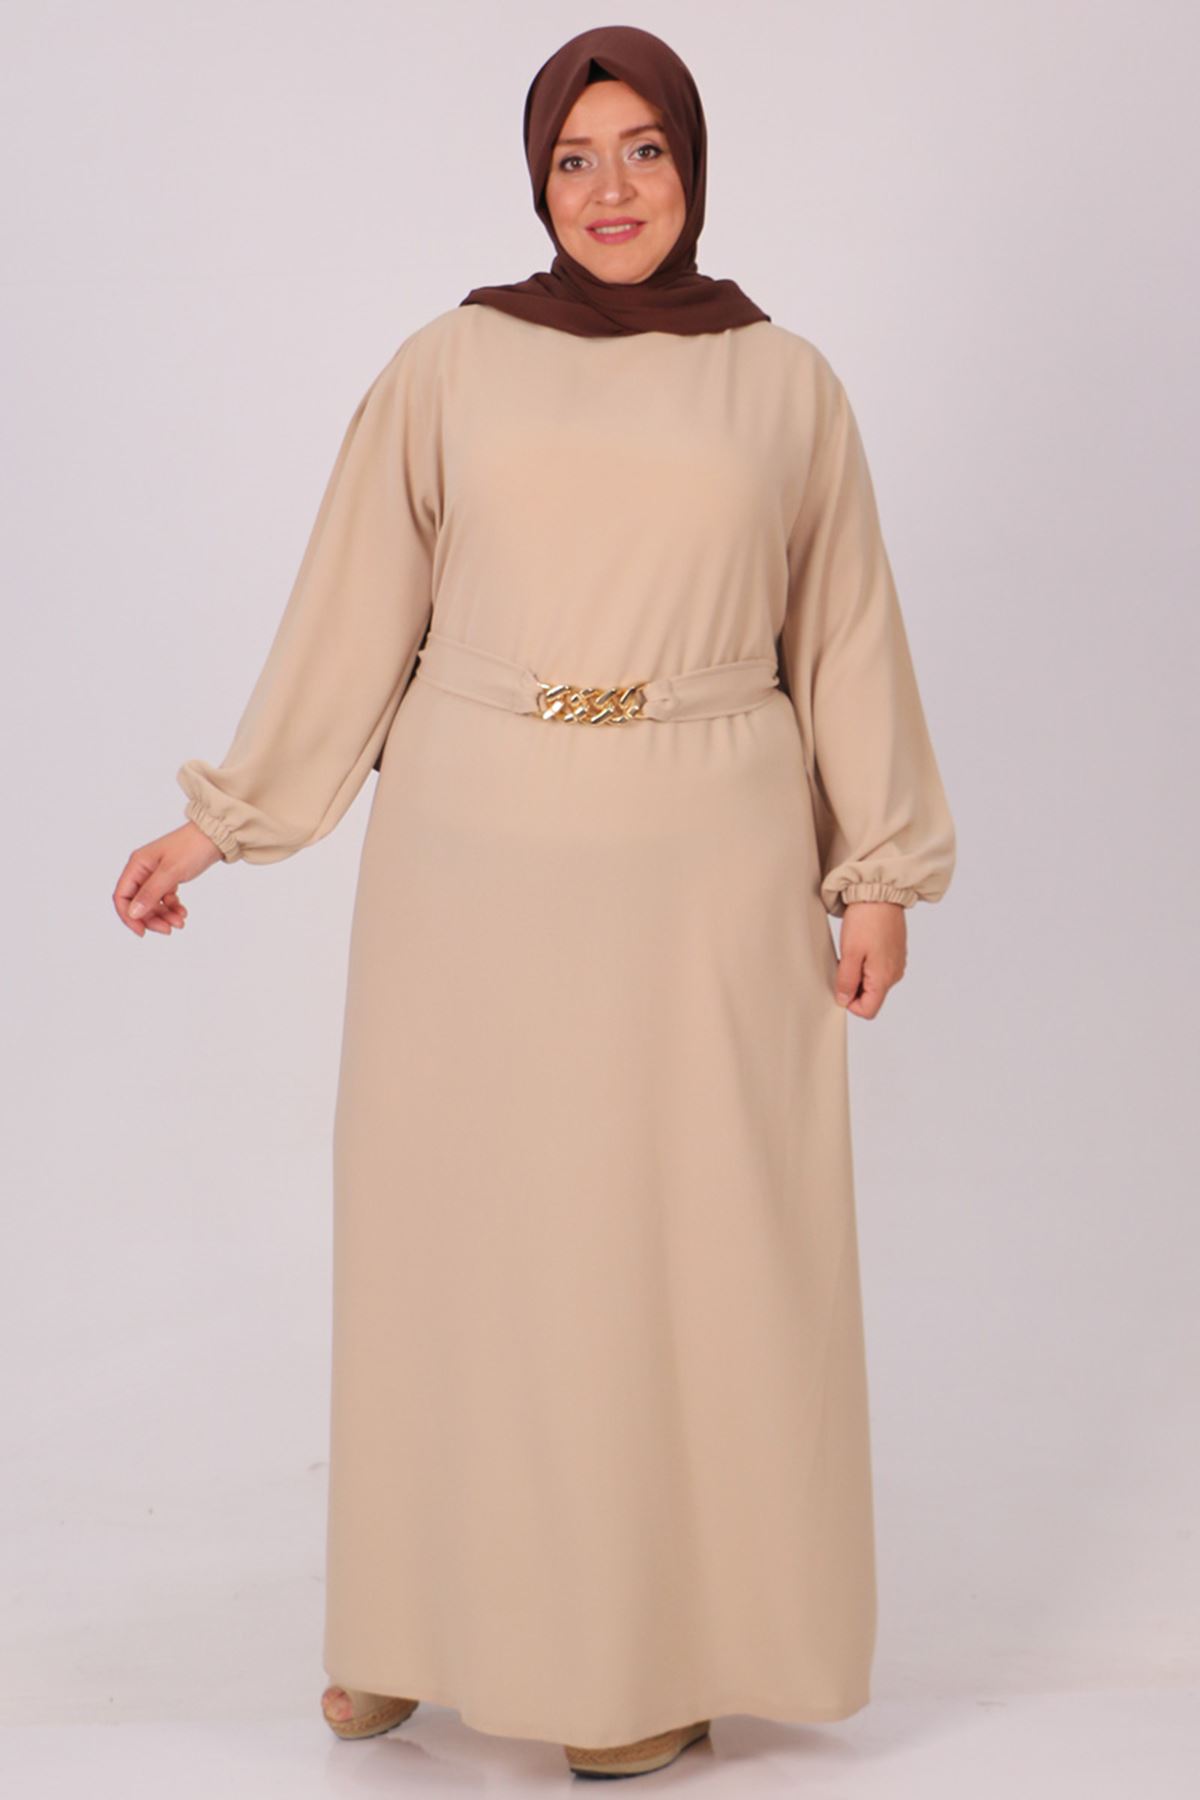  32018 Plus Size Double Layer Crepe Dress With Detachable Belt - Beige